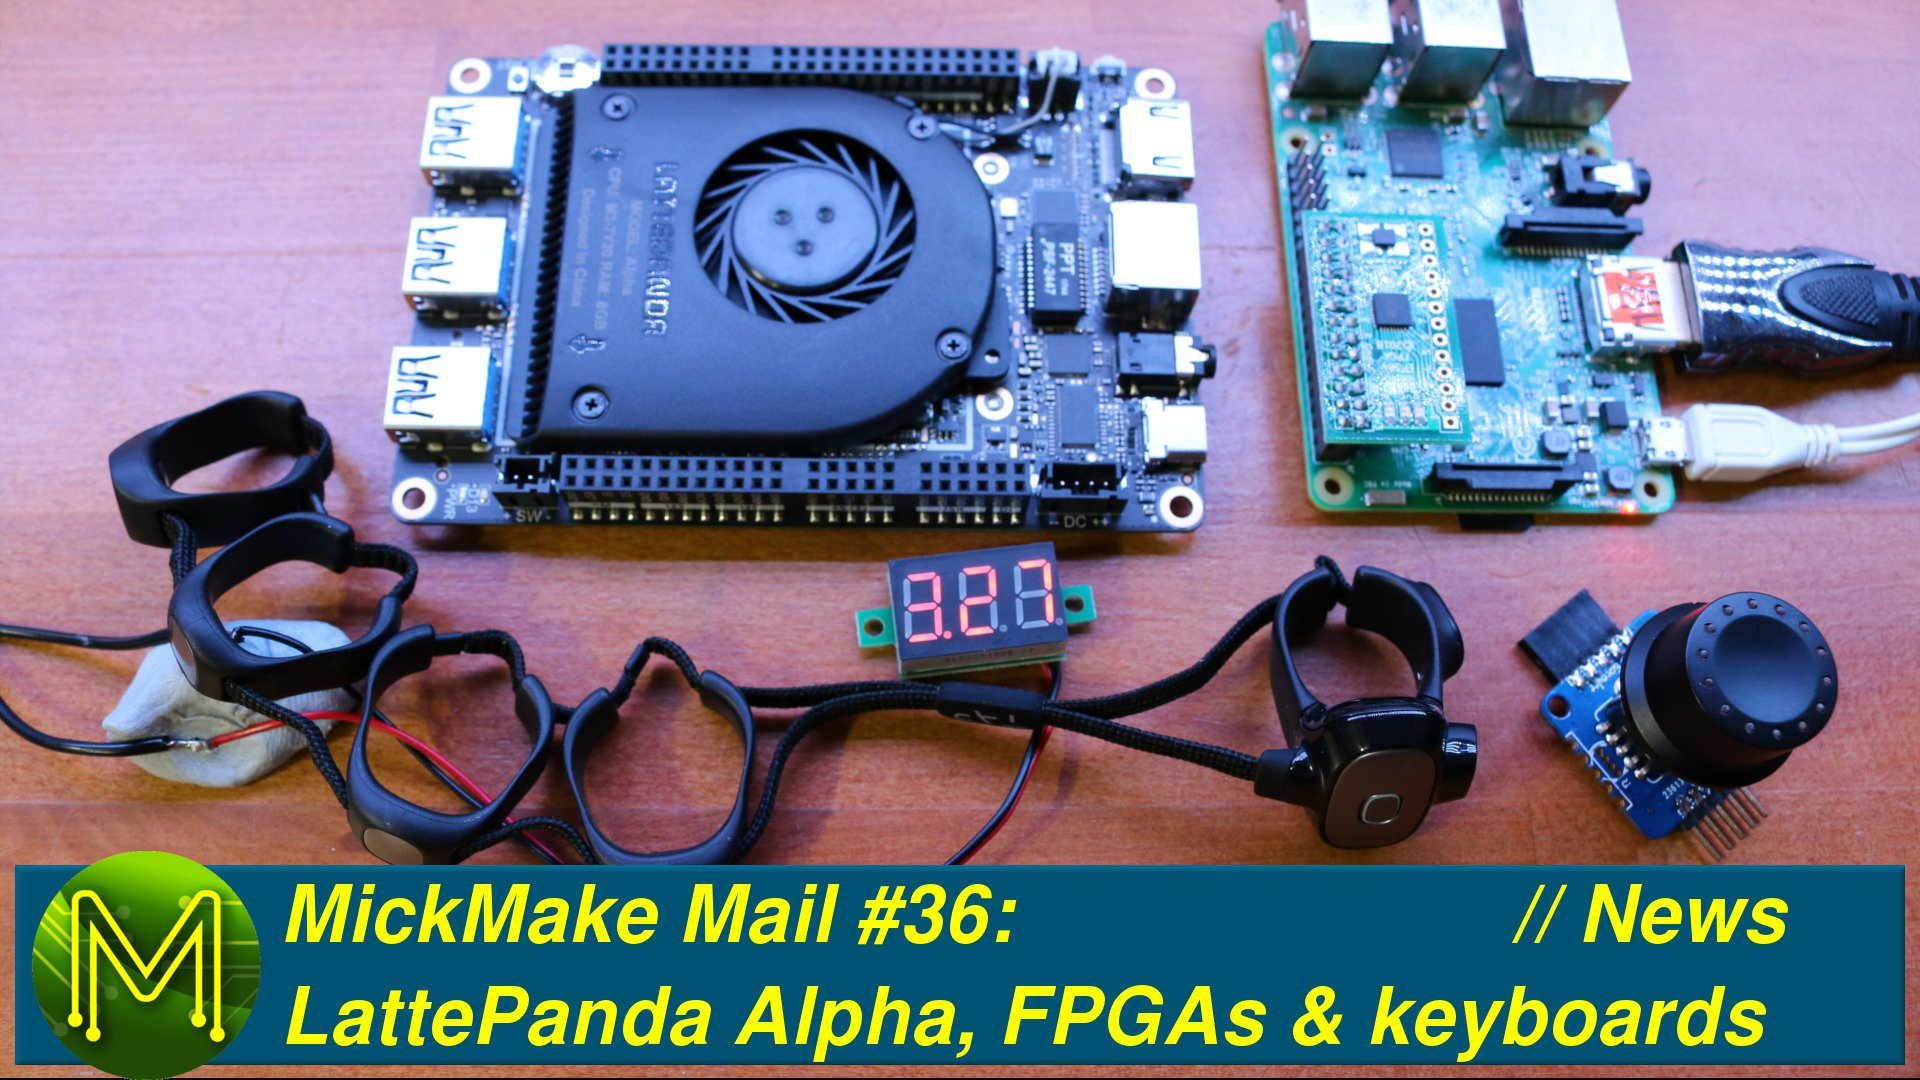 MickMake Mail #36: LattePanda Alpha, FPGAs & keyboards